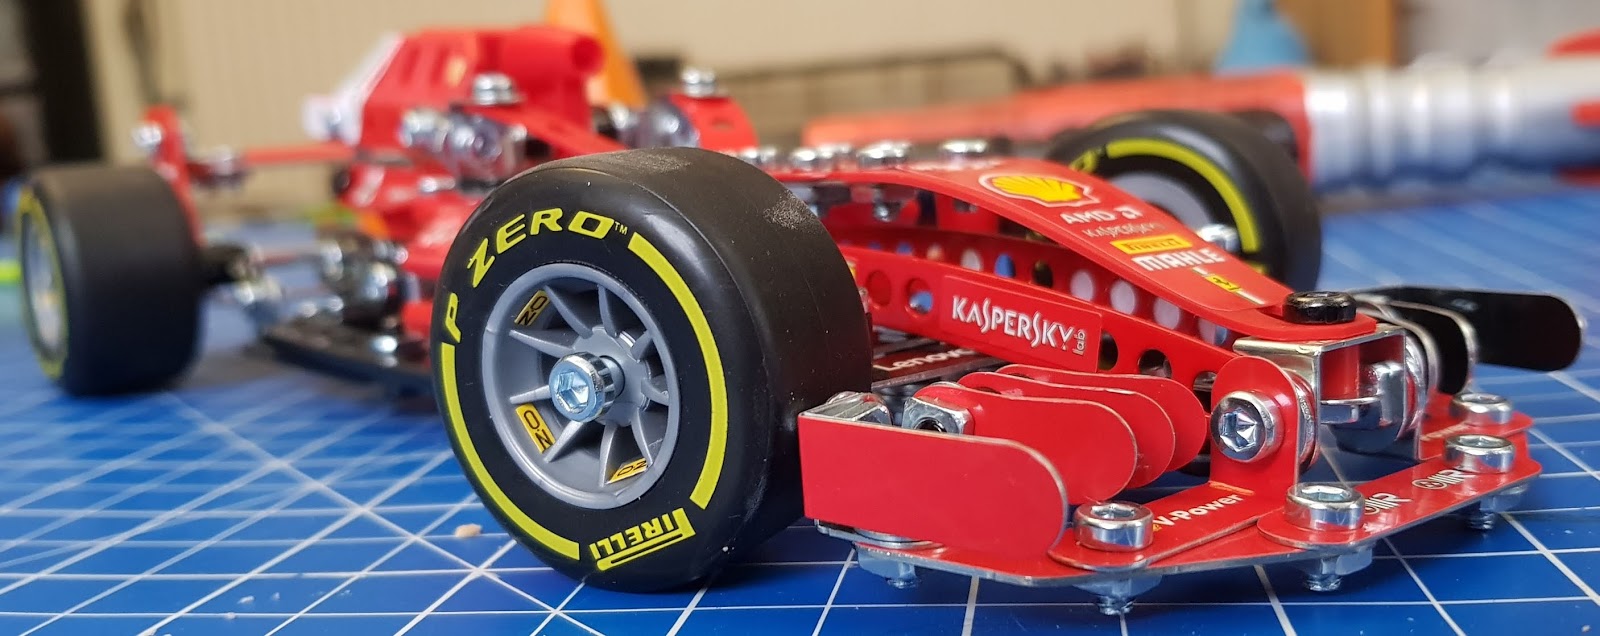 Meccano Formula 1 Ferrari Grand Prix Racer STEM Building Model Set 325 Pieces 